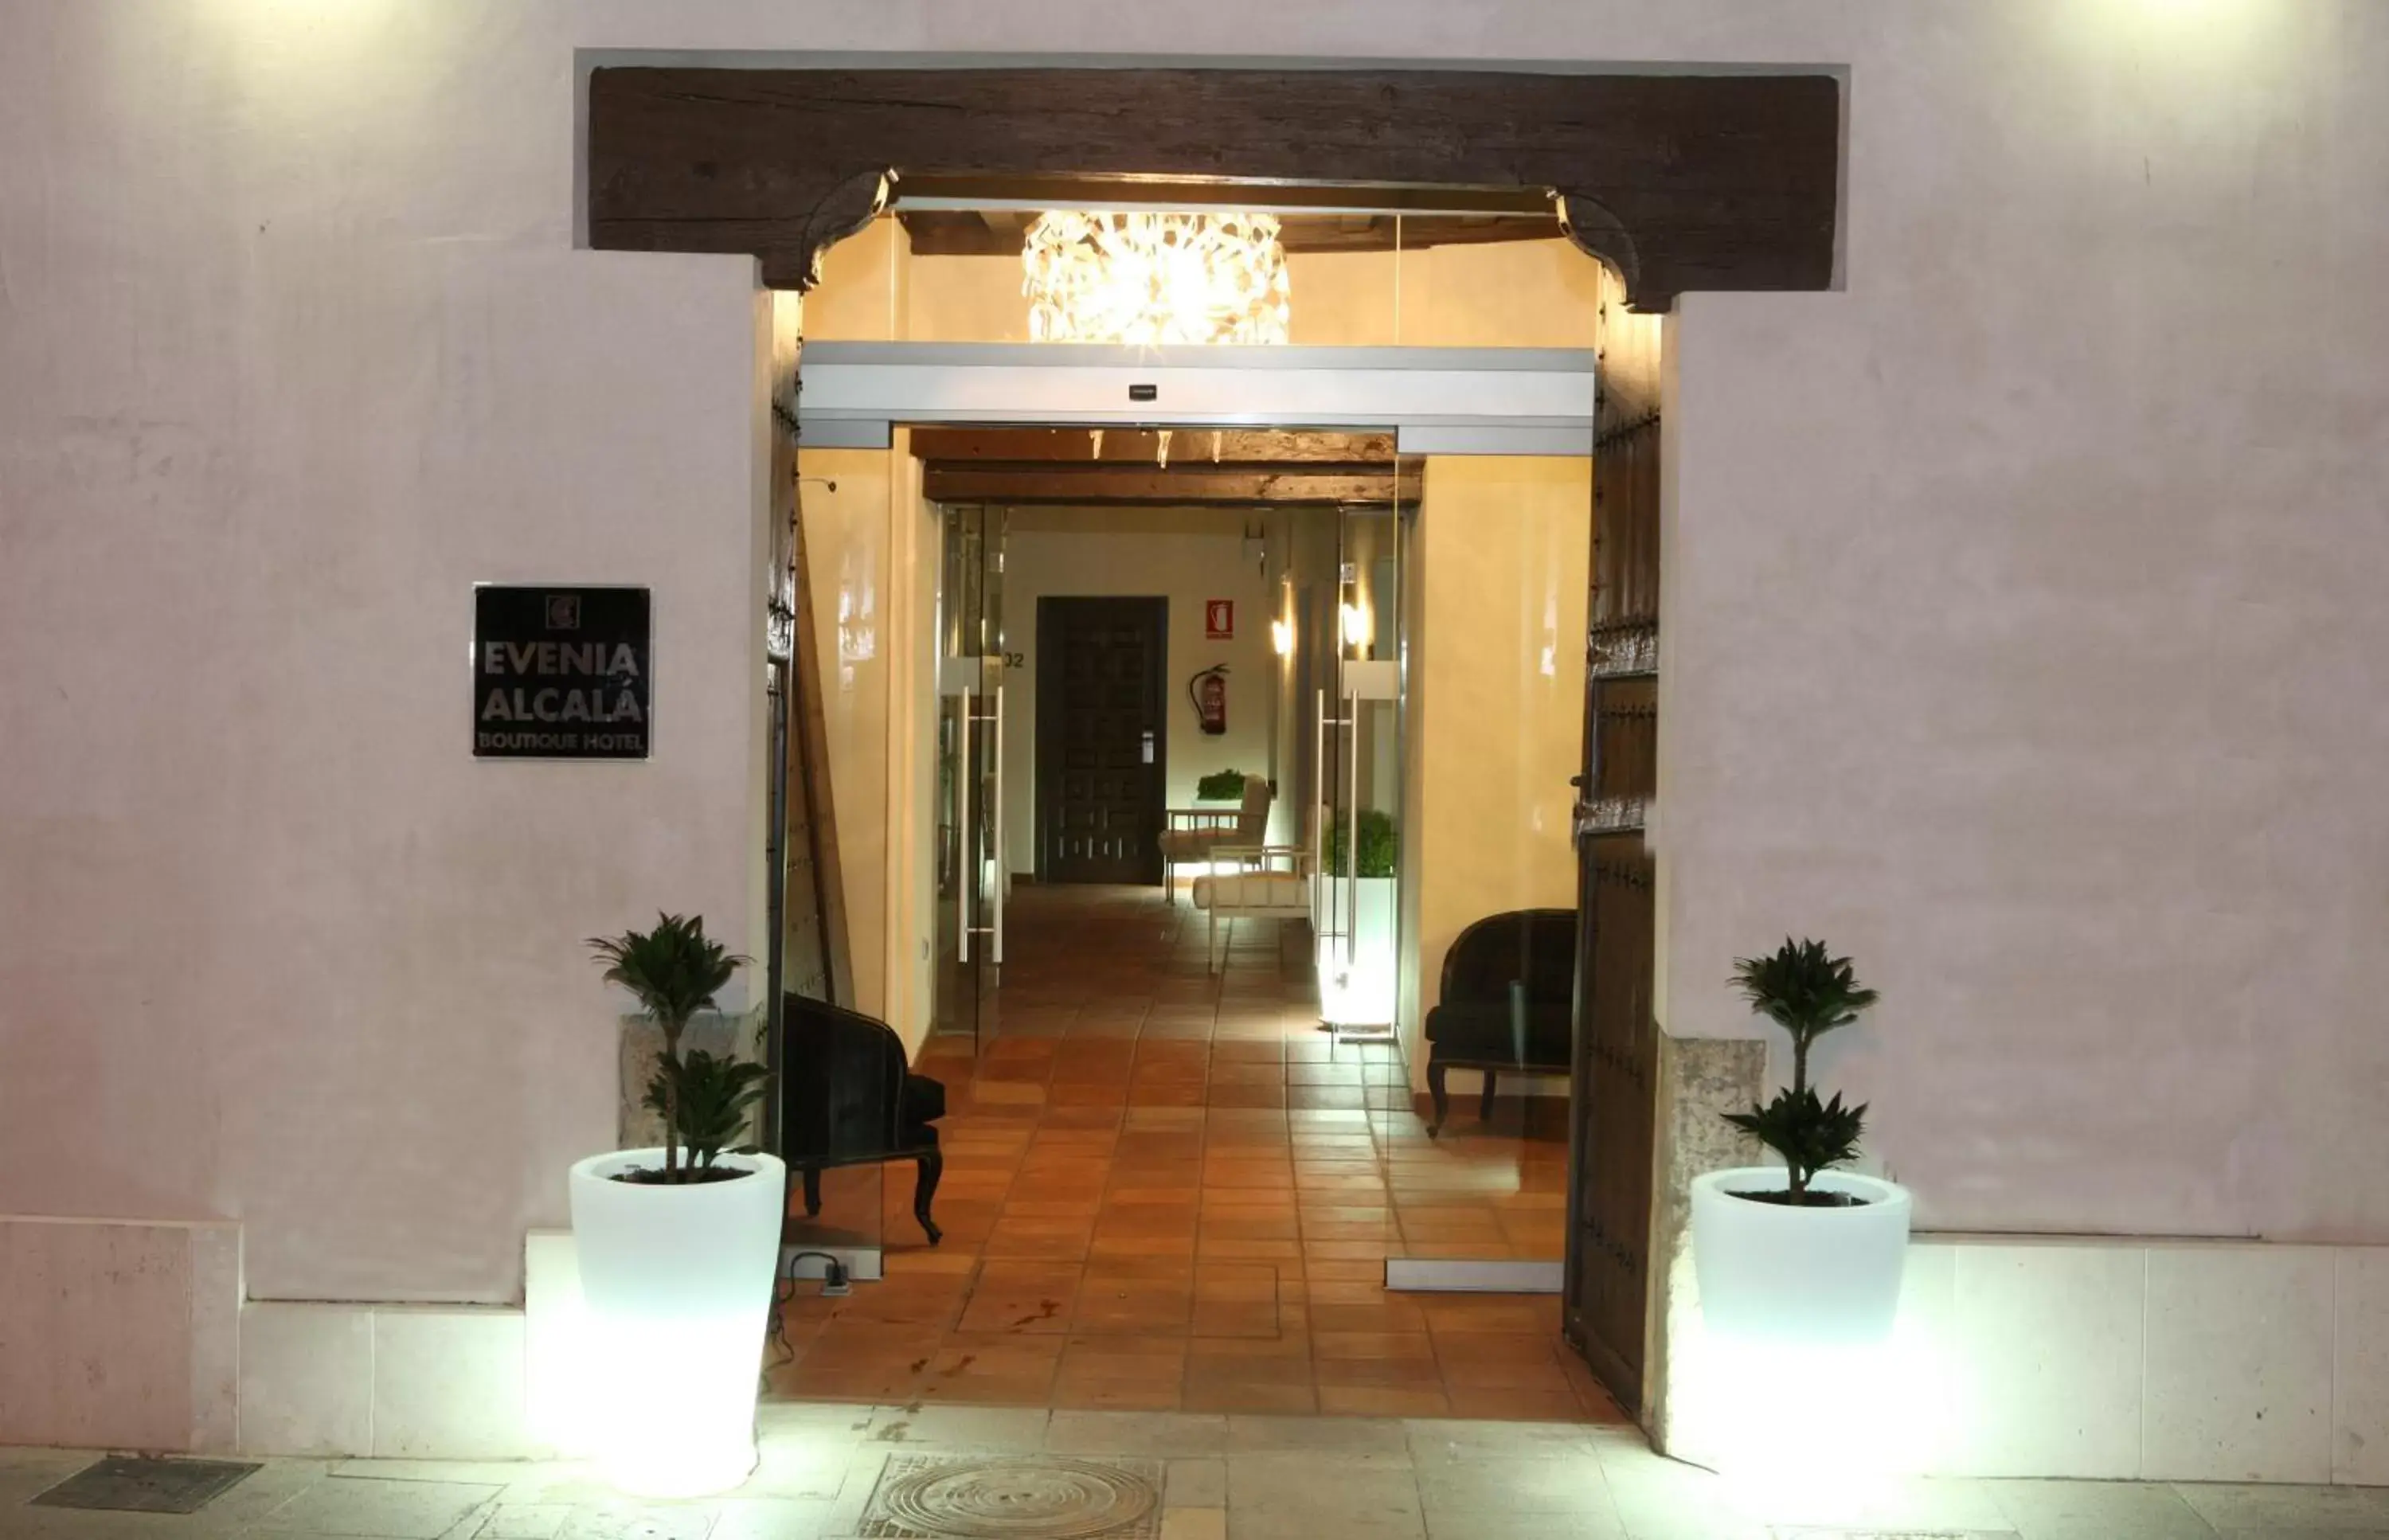 Facade/entrance in Evenia Alcalá Boutique Hotel